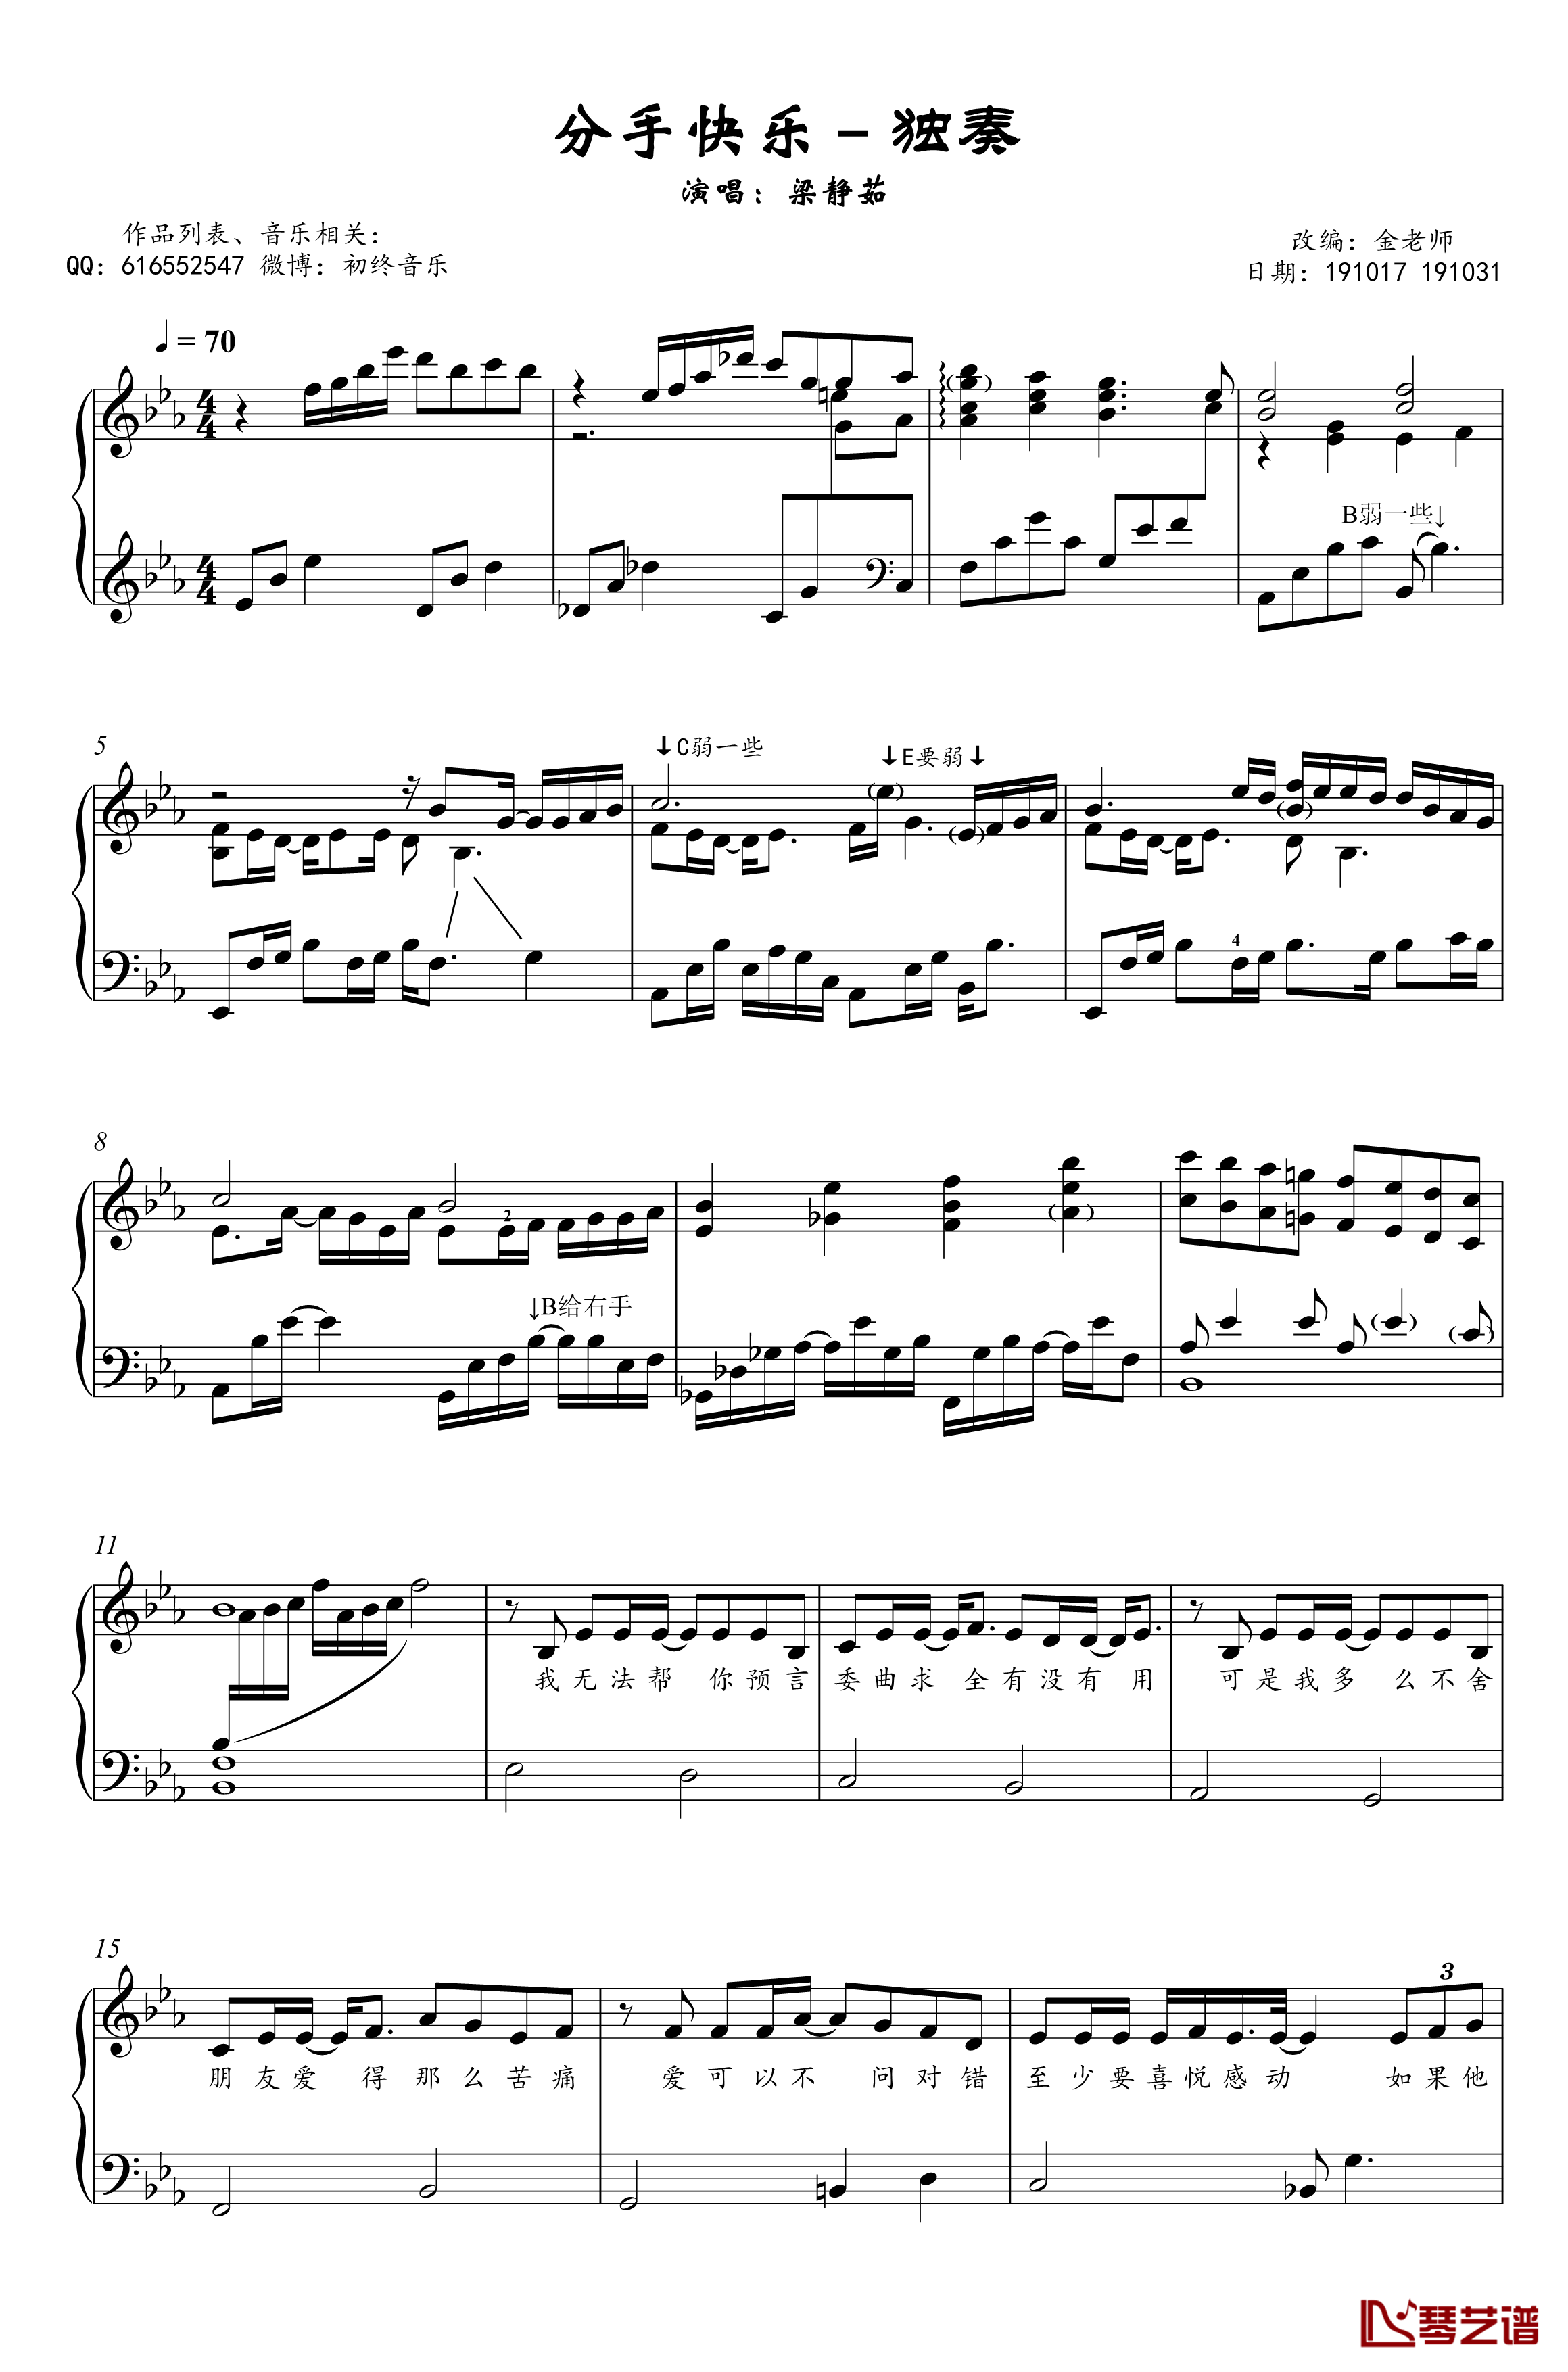 分手快乐钢琴谱-独奏谱-梁静茹-金老师钢琴1910312